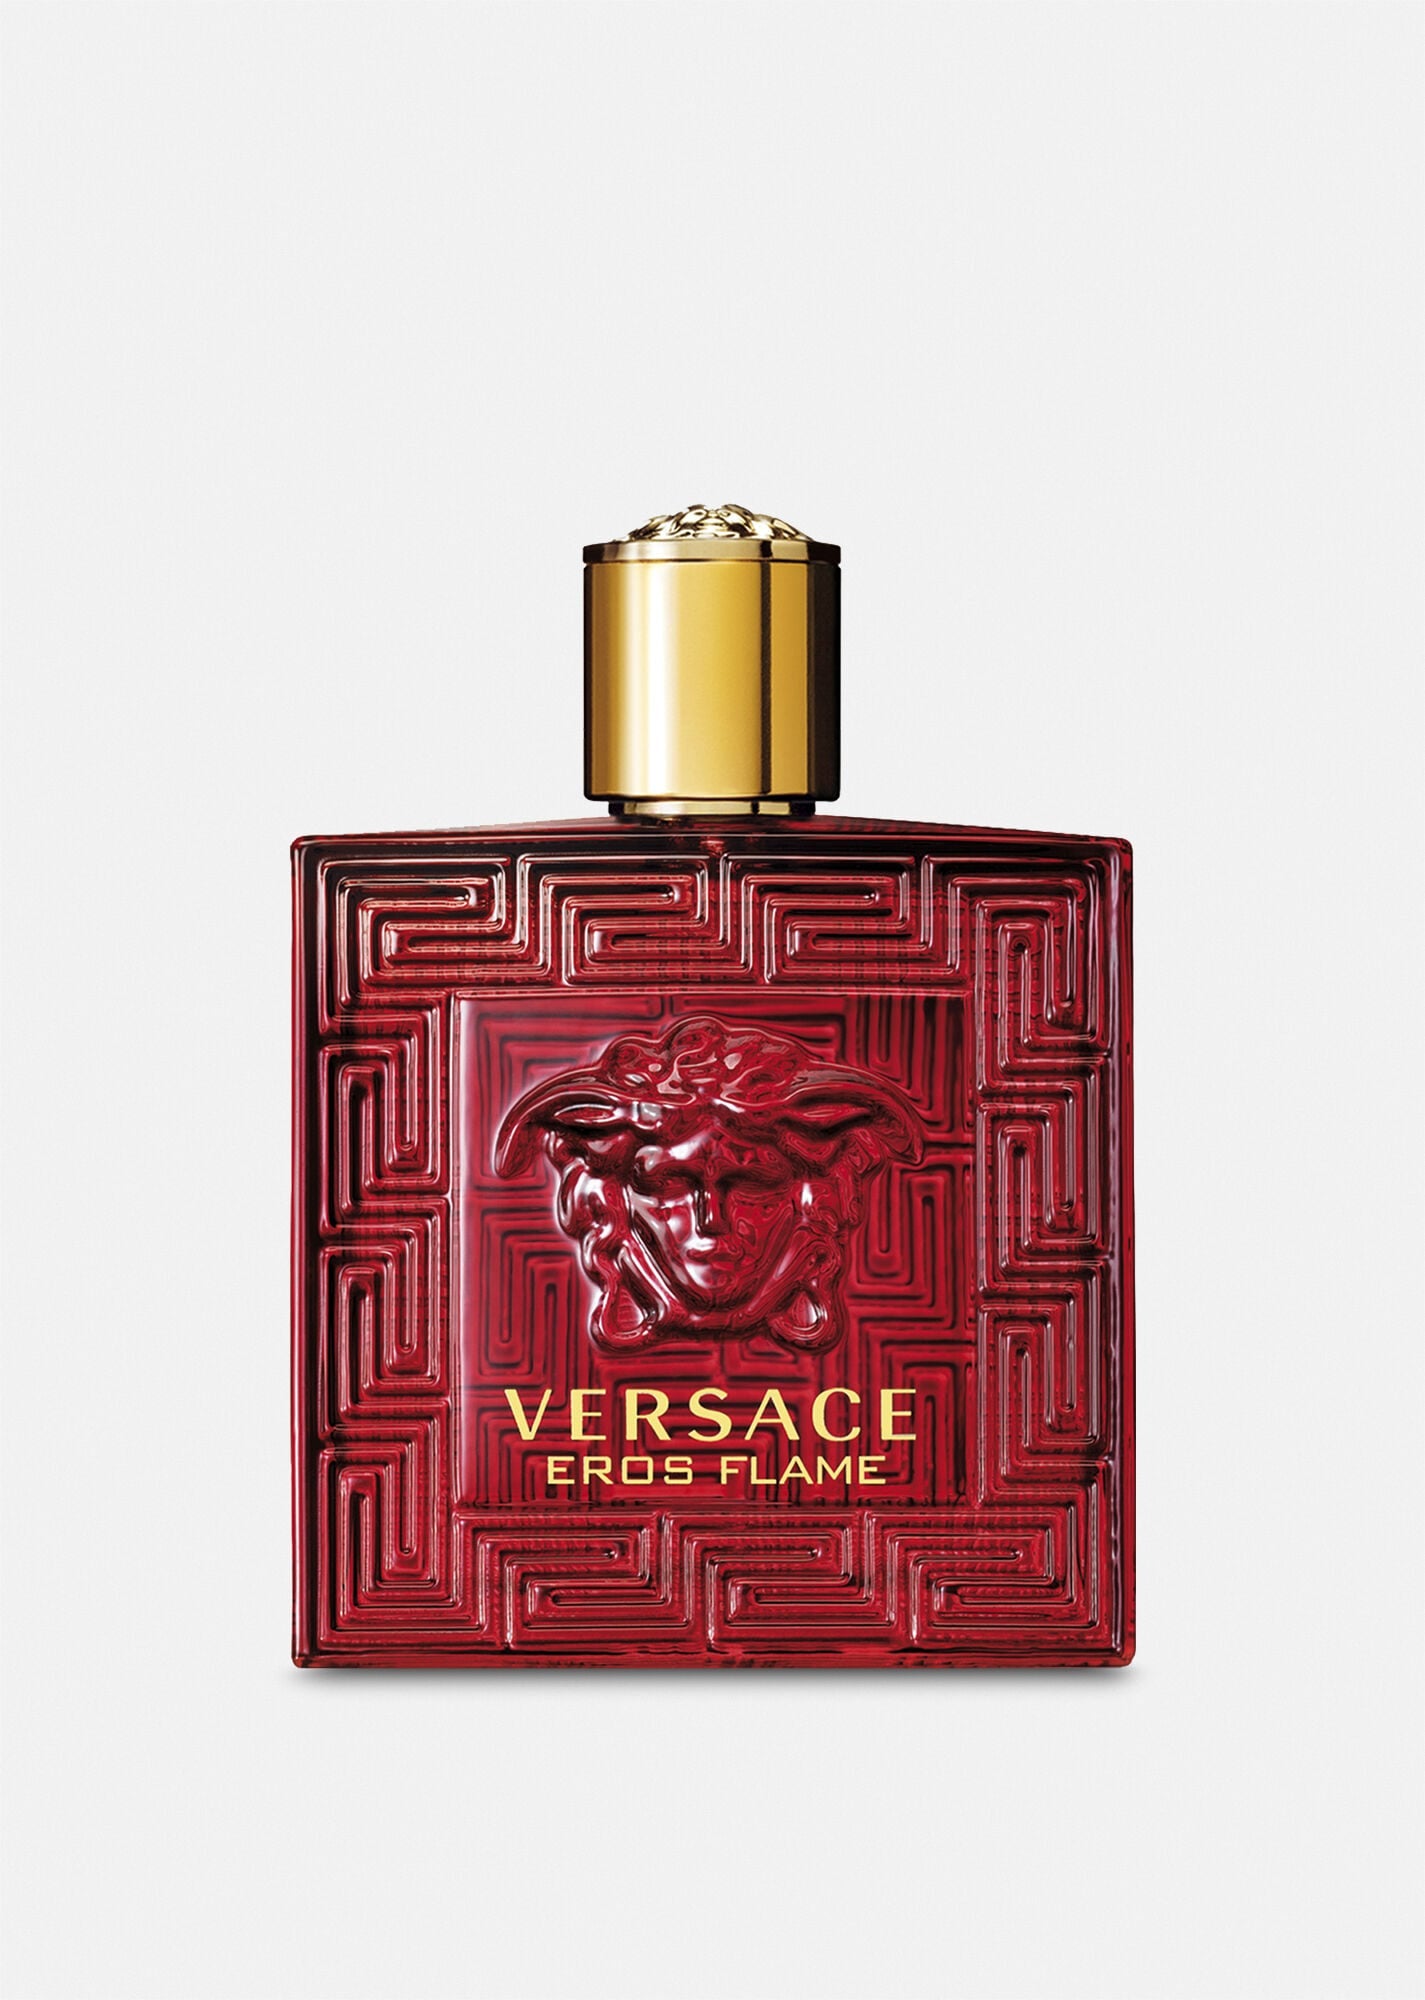 Versace Eros Flame for Men Eau de Parfum Spray